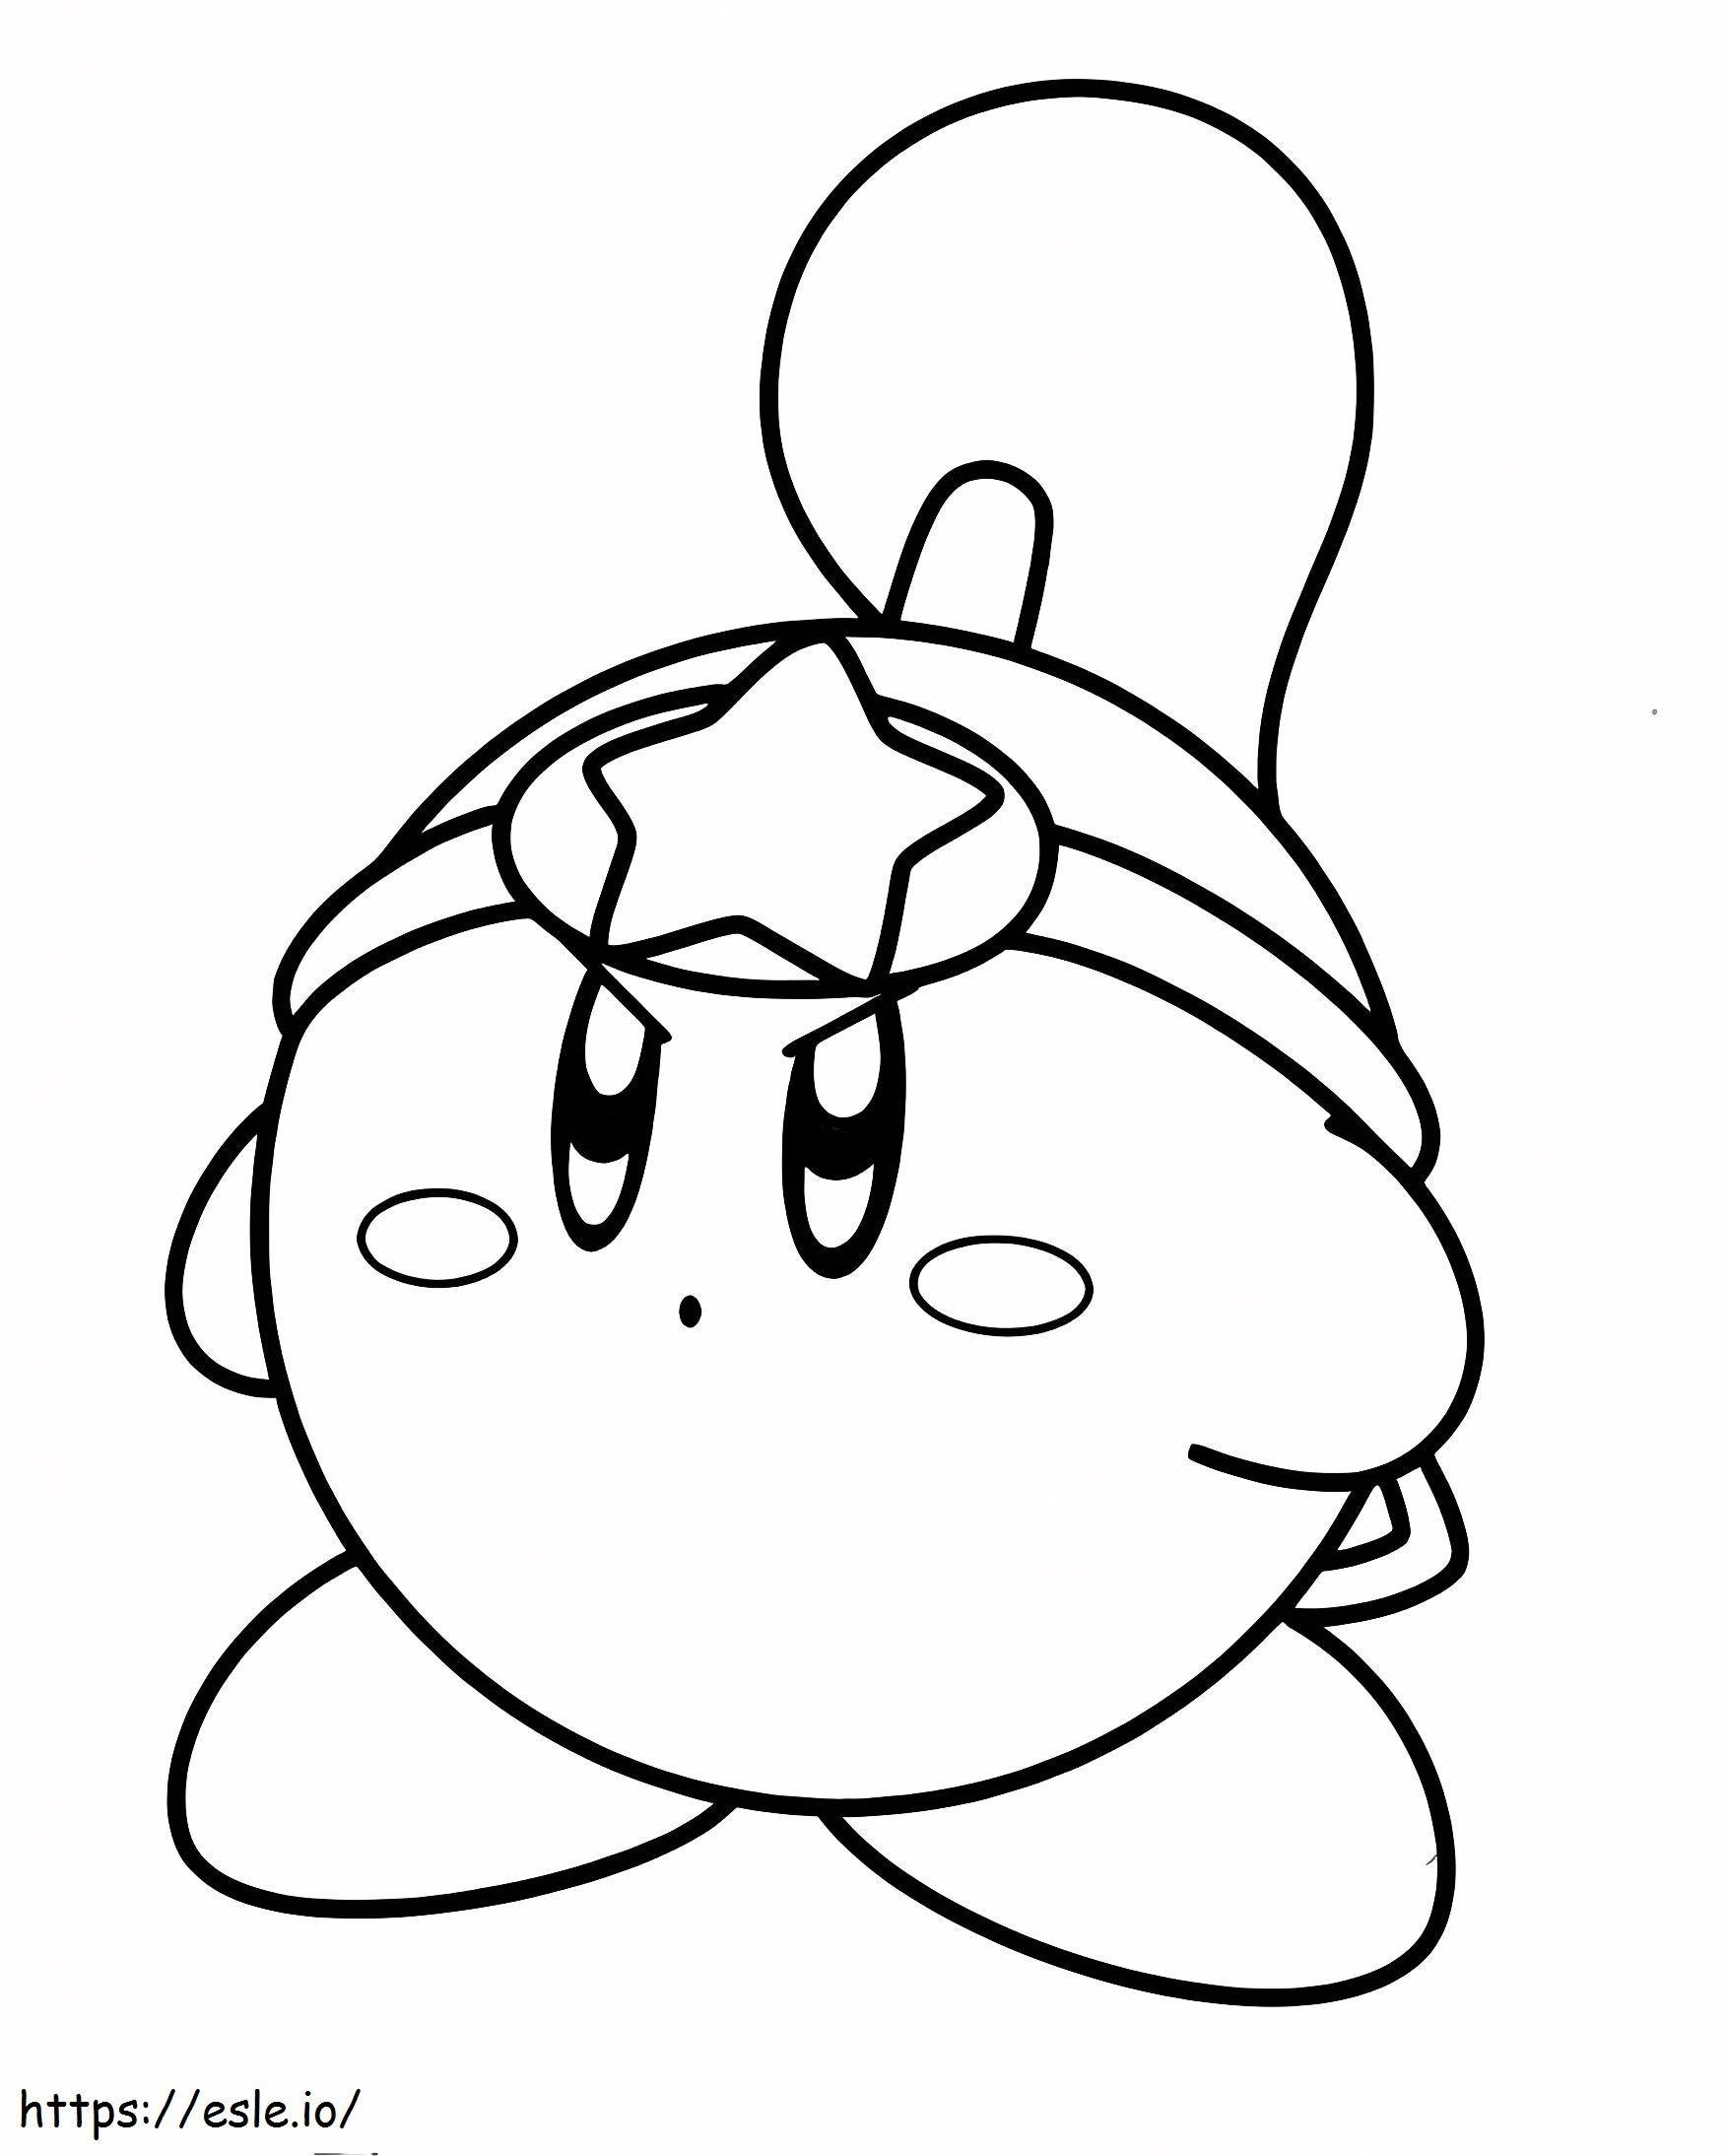 Kirby grátis para colorir